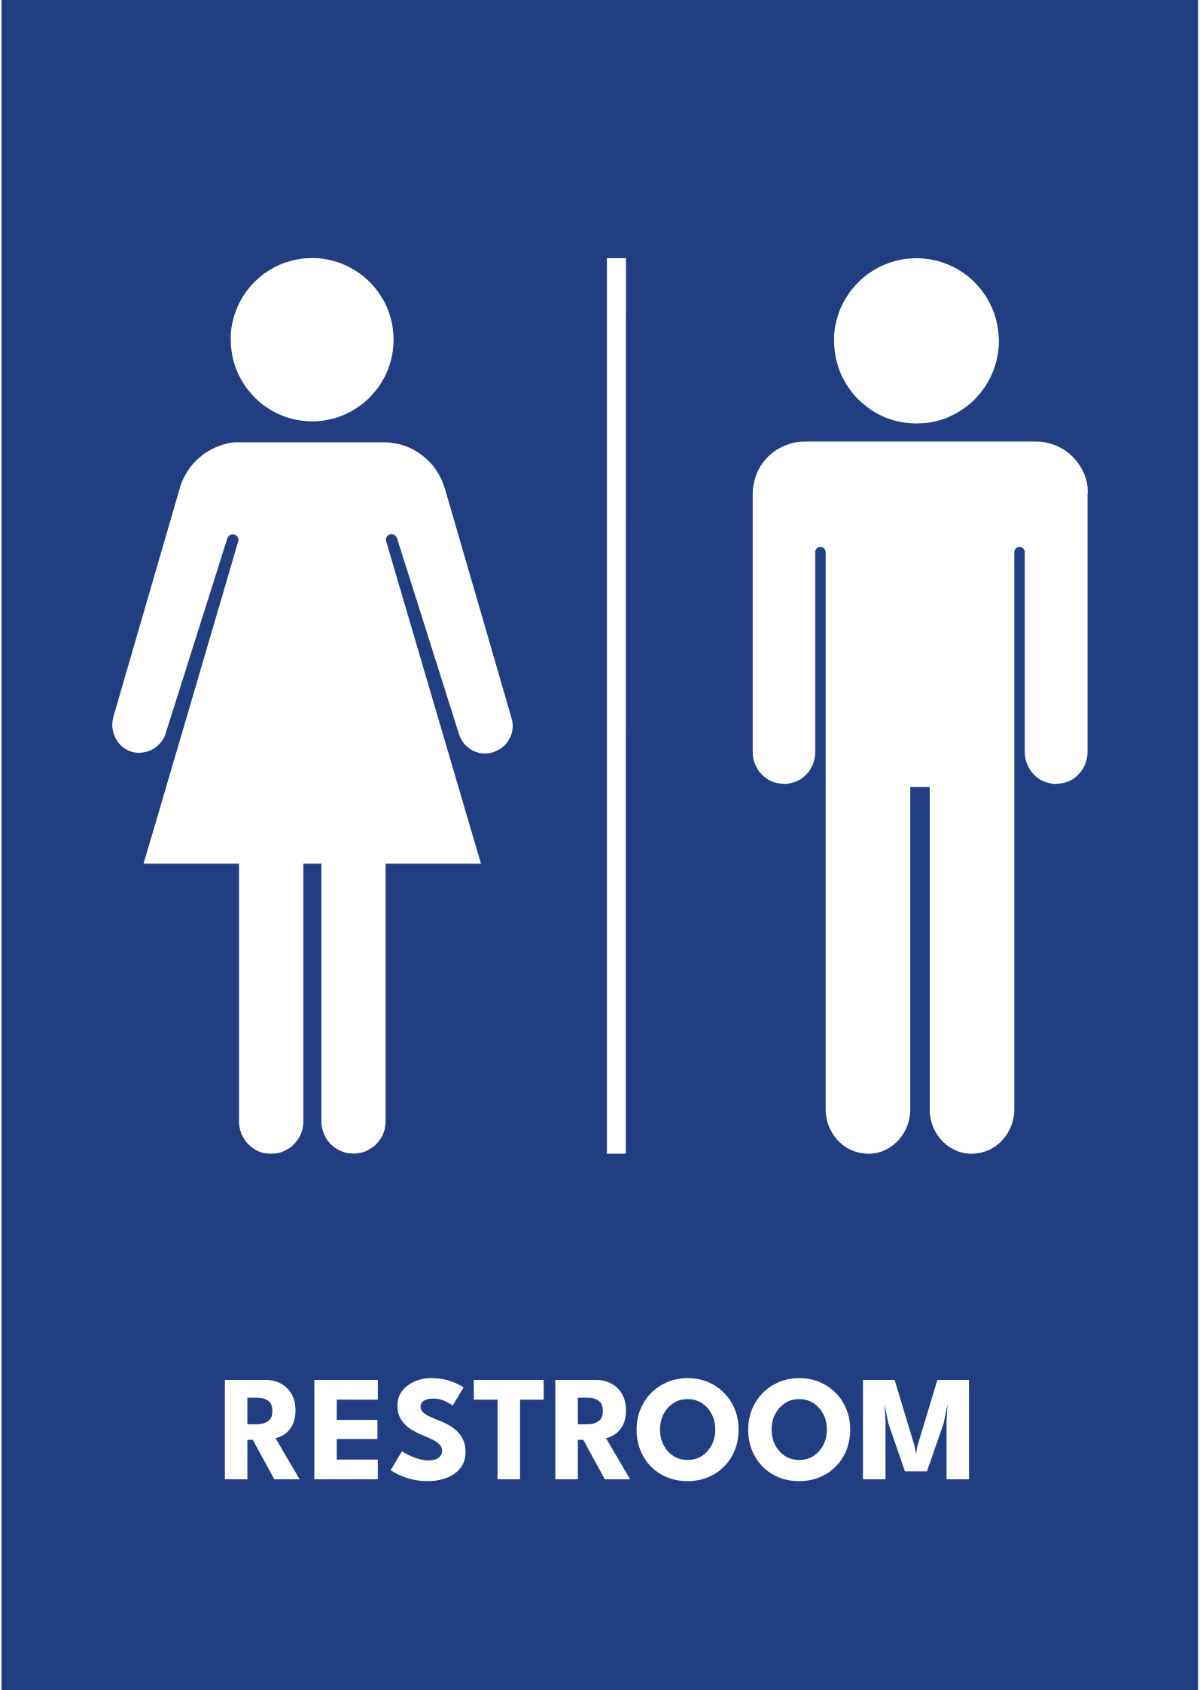 School Restrooms Sign